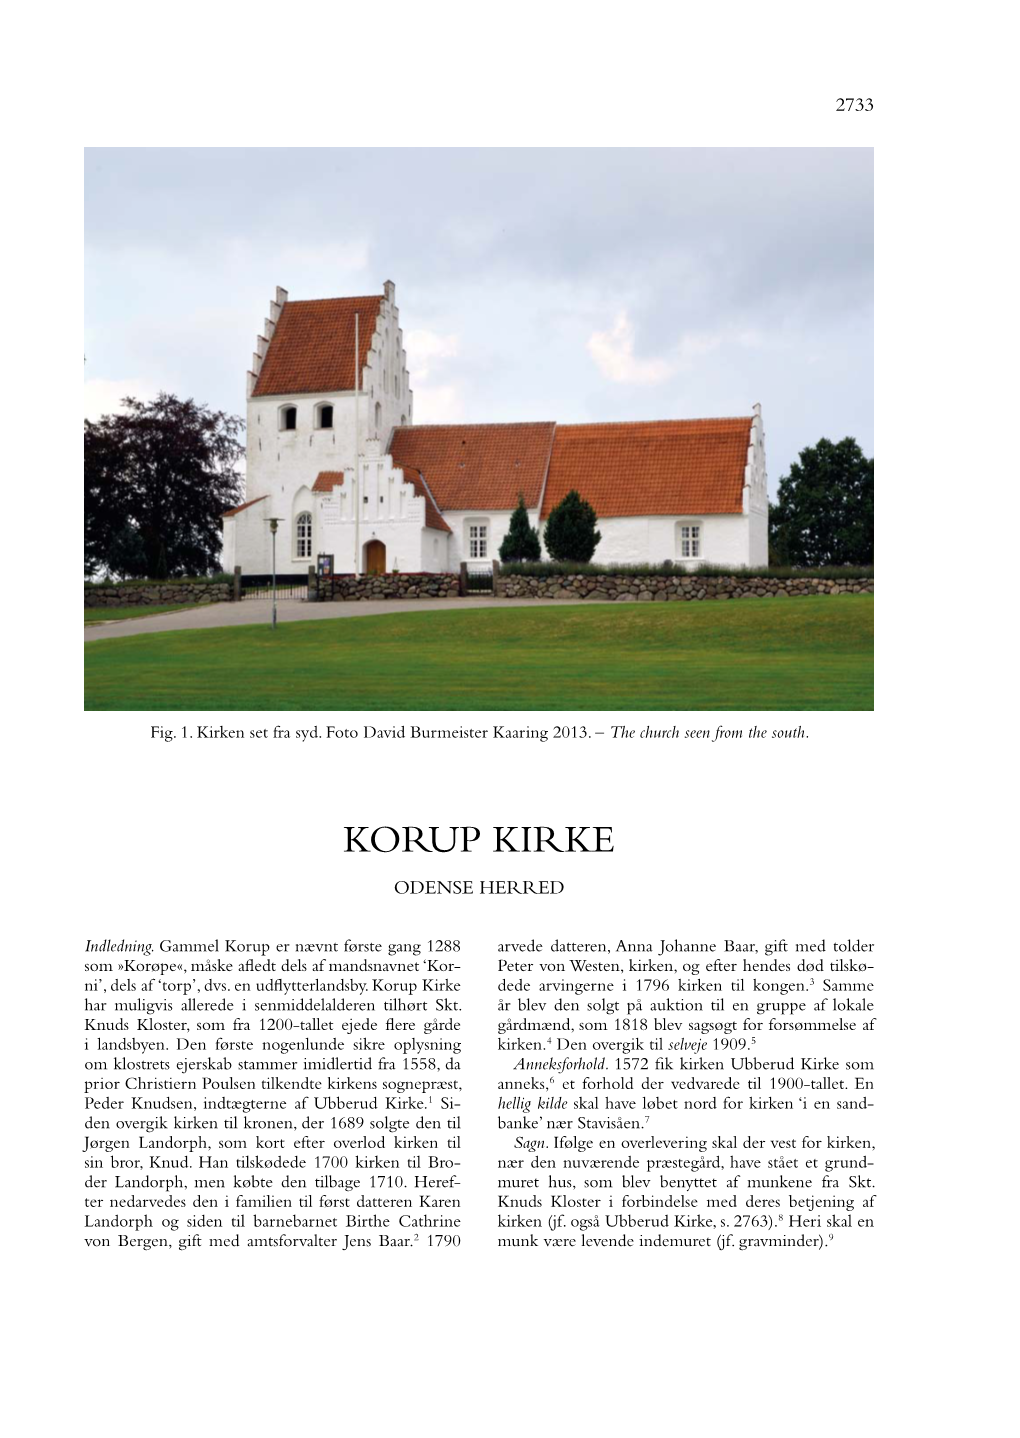 Korup Kirke Odense Herred